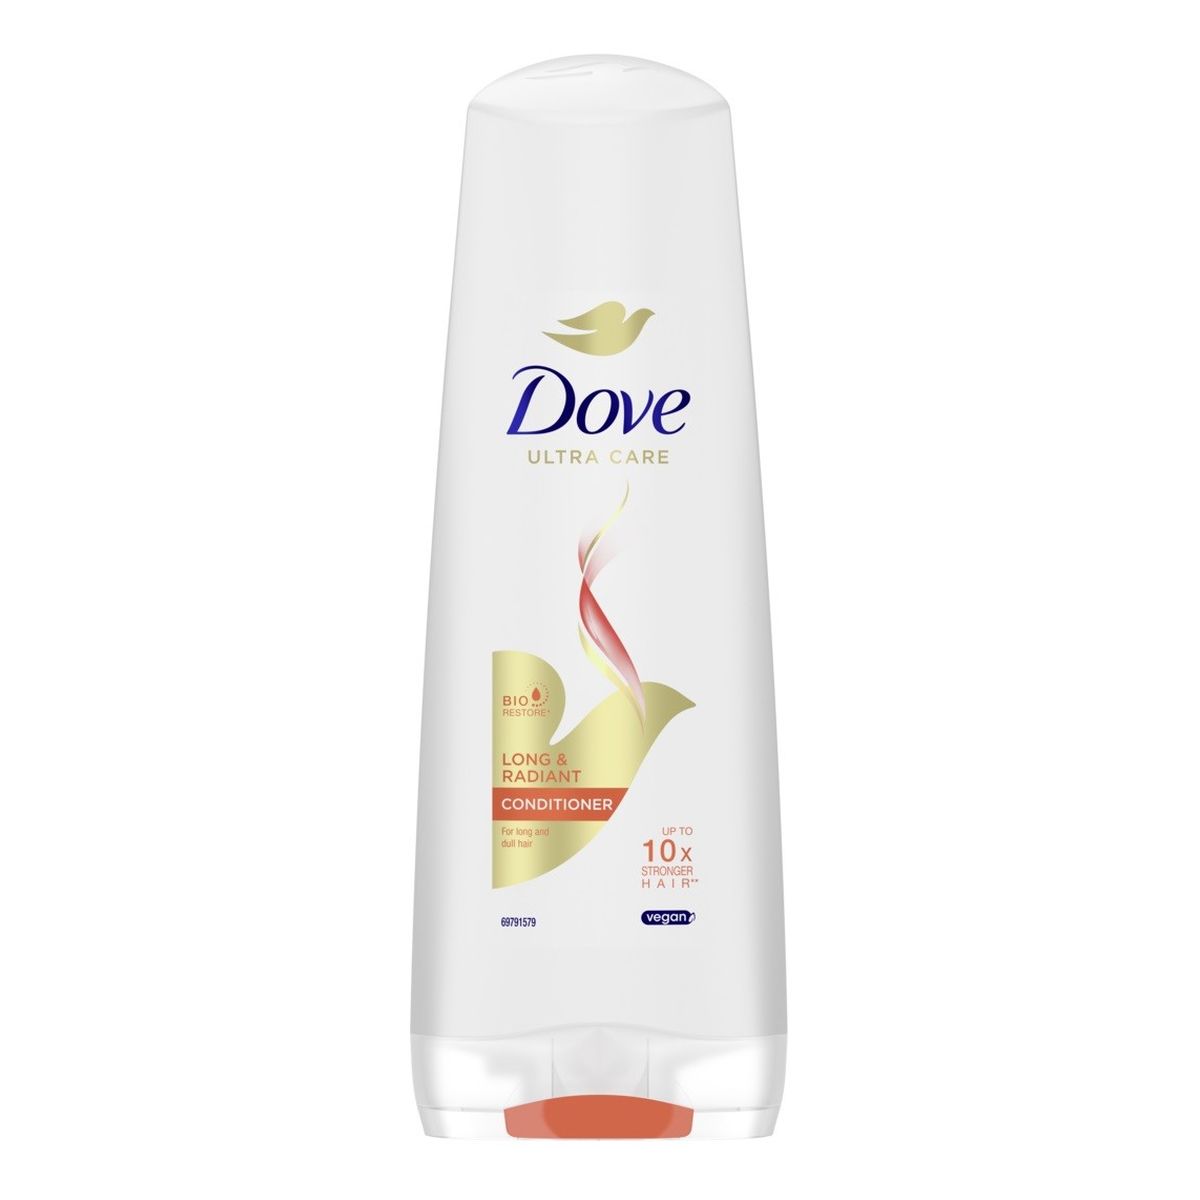 Unilever Dove ultra care odżywka do włosów długich i matowych long & radiant 350ml